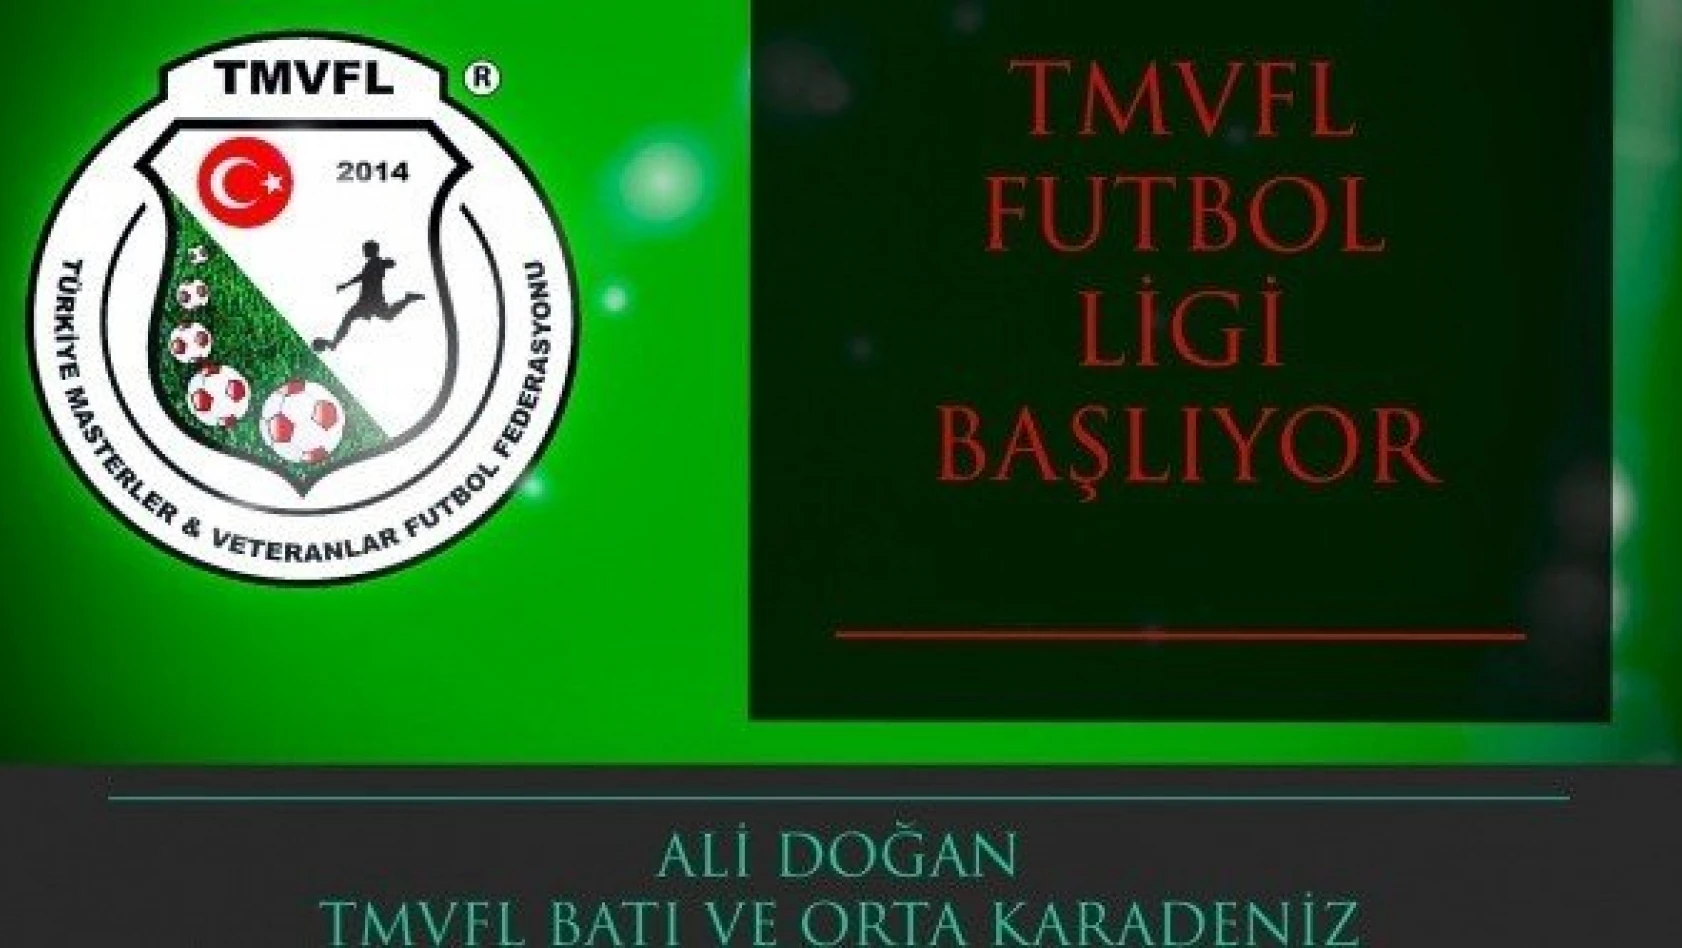 TMVFL Futbol Ligi başlıyor